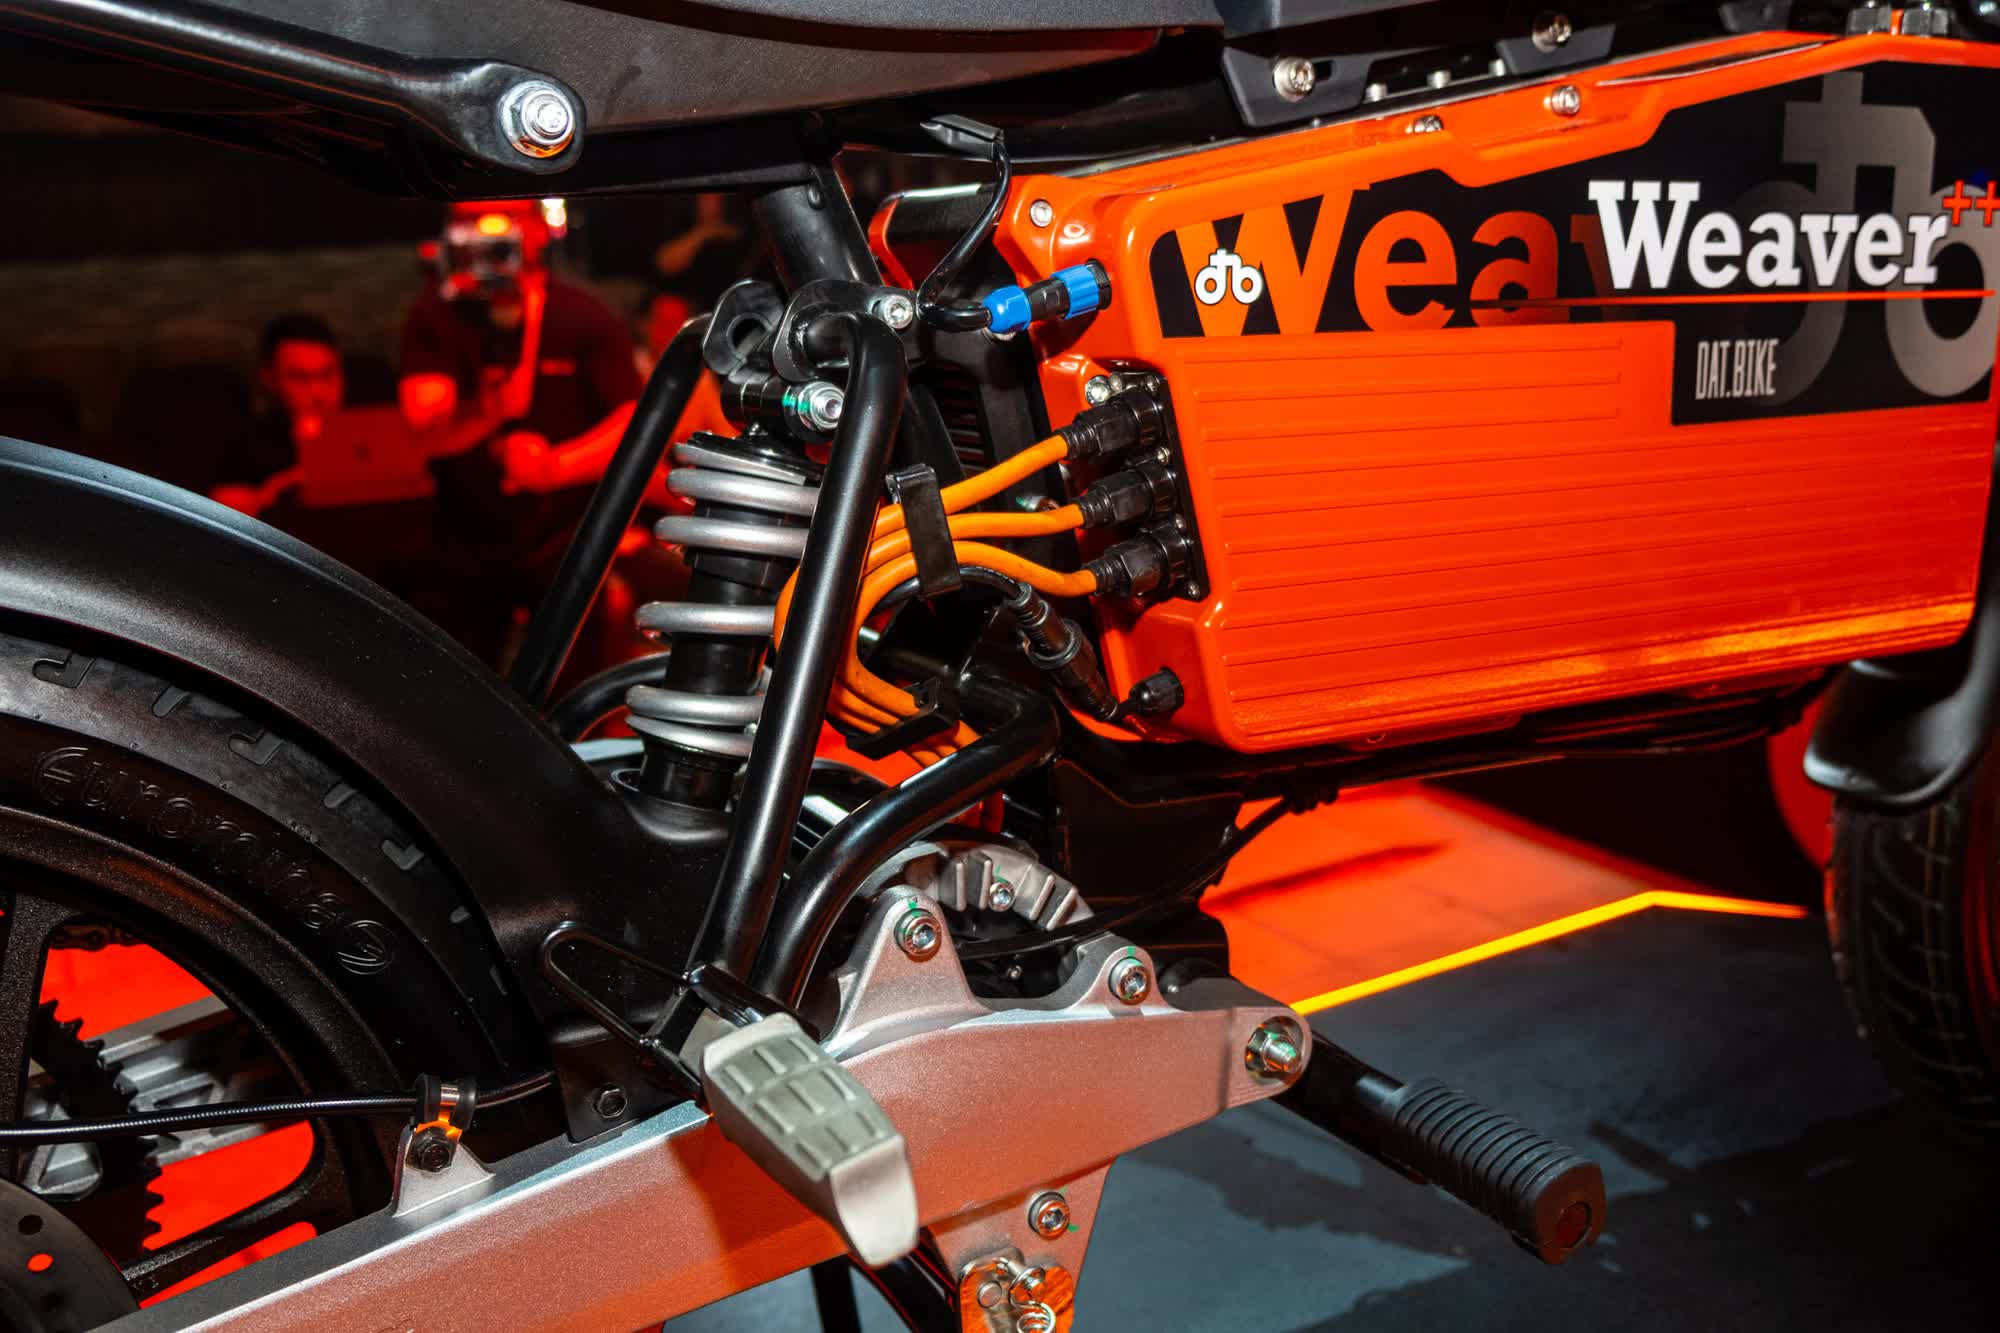 Ra mắt Dat Bike Weaver++: Giá 65,9 triệu đồng, dáng cổ điển, sạc nhanh chưa từng có tại Việt Nam - Ảnh 3.